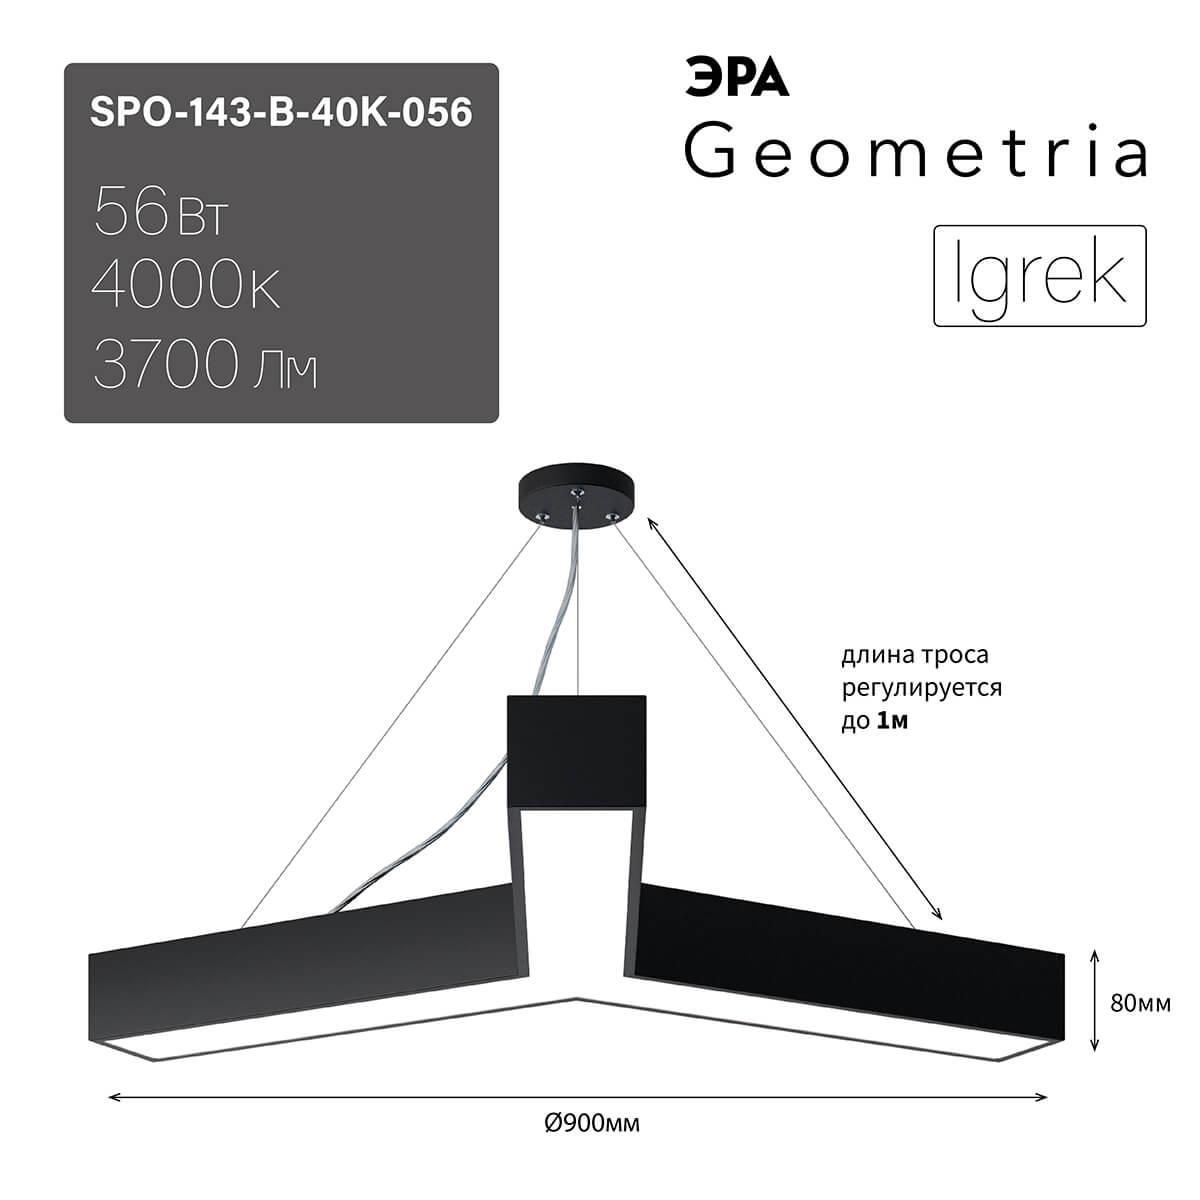 подвесной светодиодный cветильник geometria эра igrek spo-143-b-40k-056 56вт 4000к черный б0050571